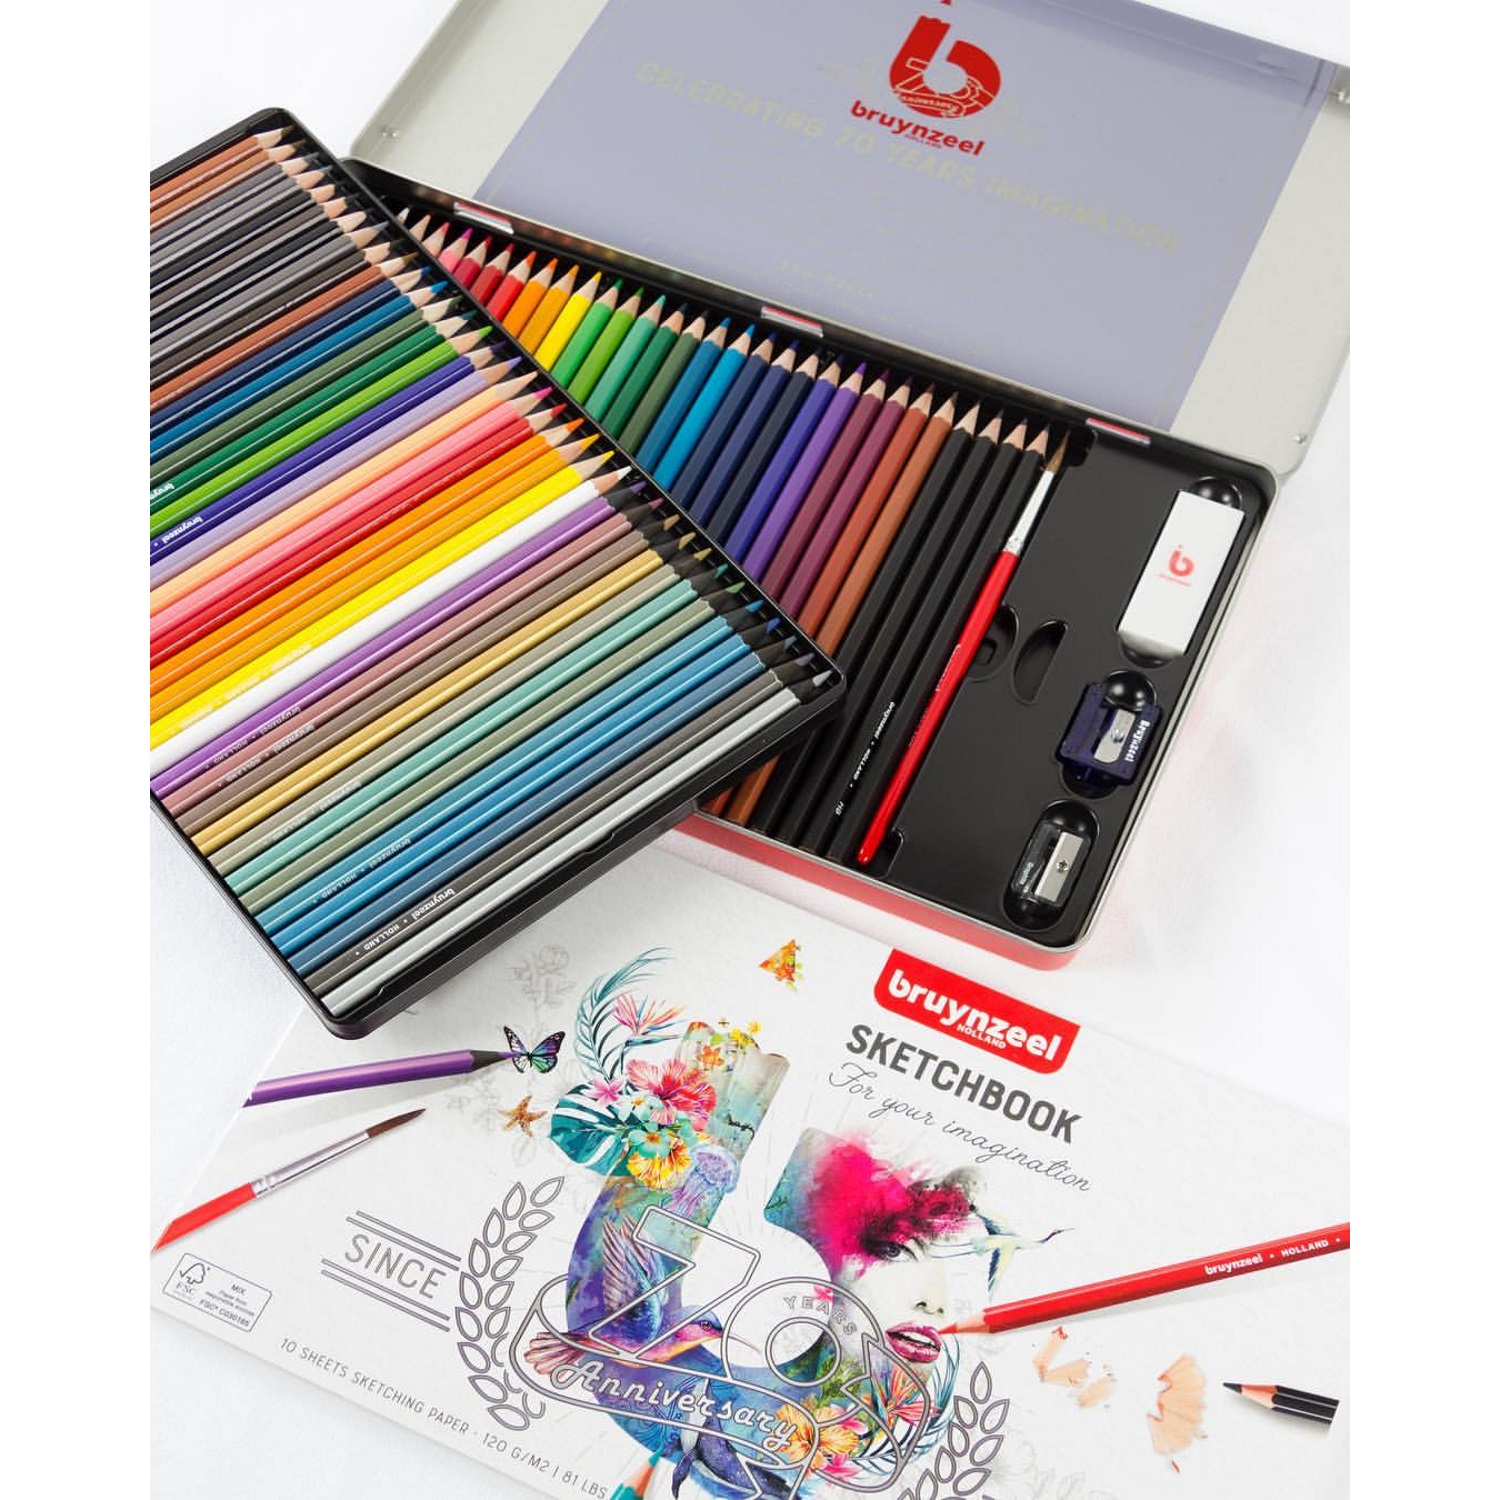 Lápis de cor Colouring & Drawing 70 Peças da Bruynzeel